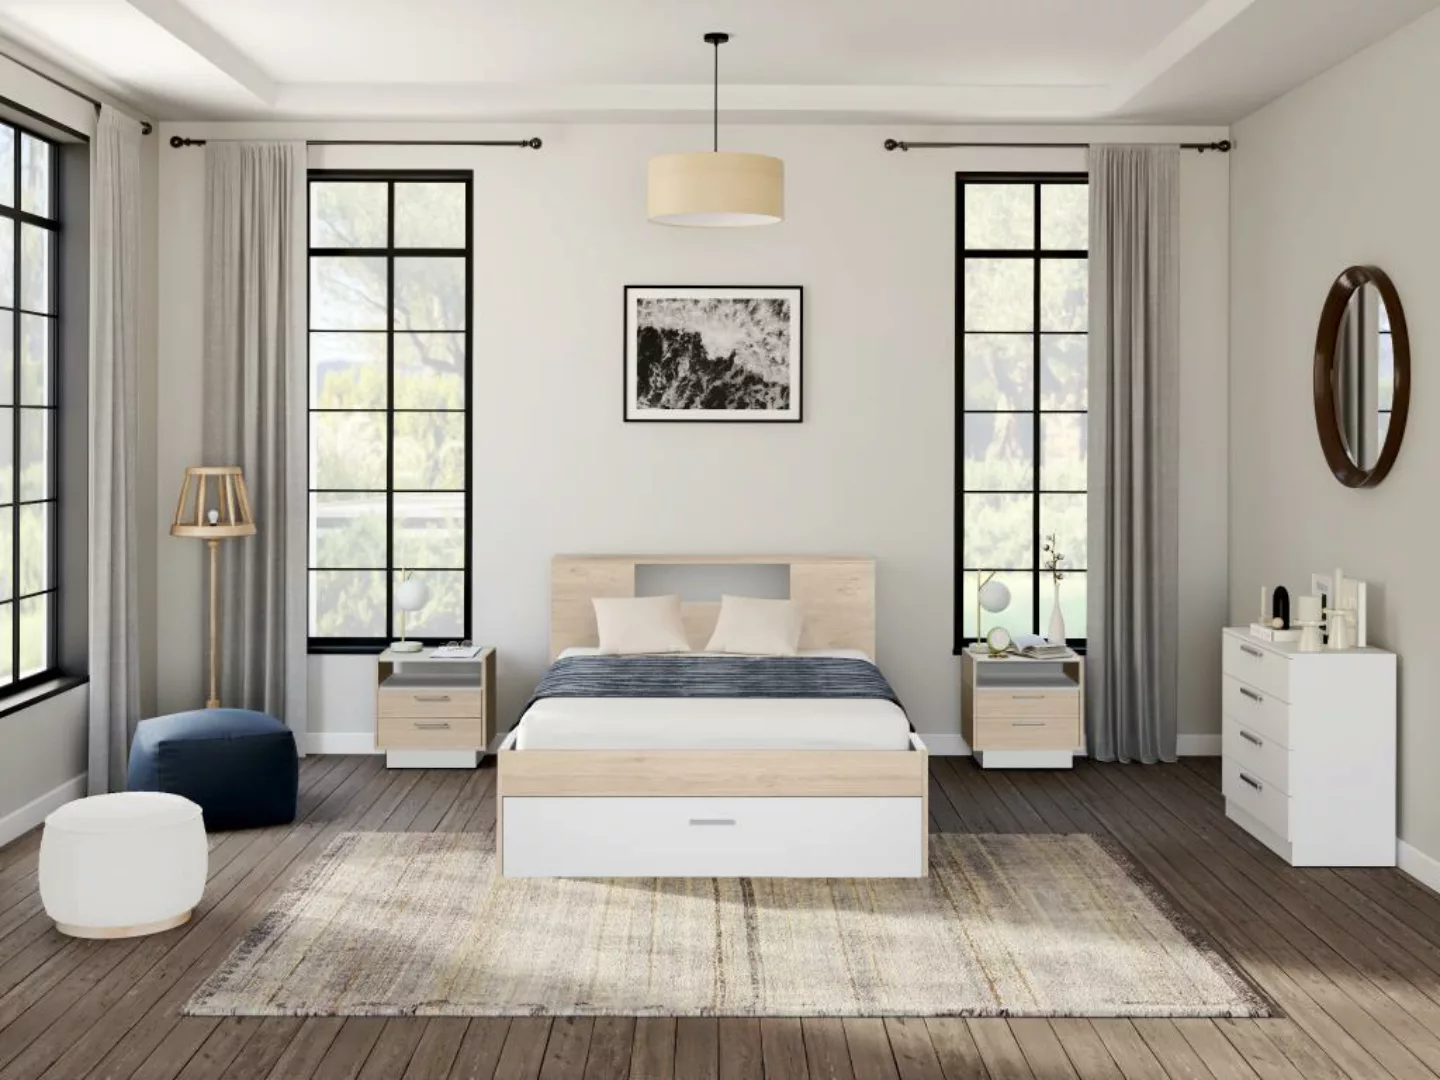 Bett mit Kopfteil, Stauraum & Schubladen + Nachttische - 160 x 200 cm - Hol günstig online kaufen